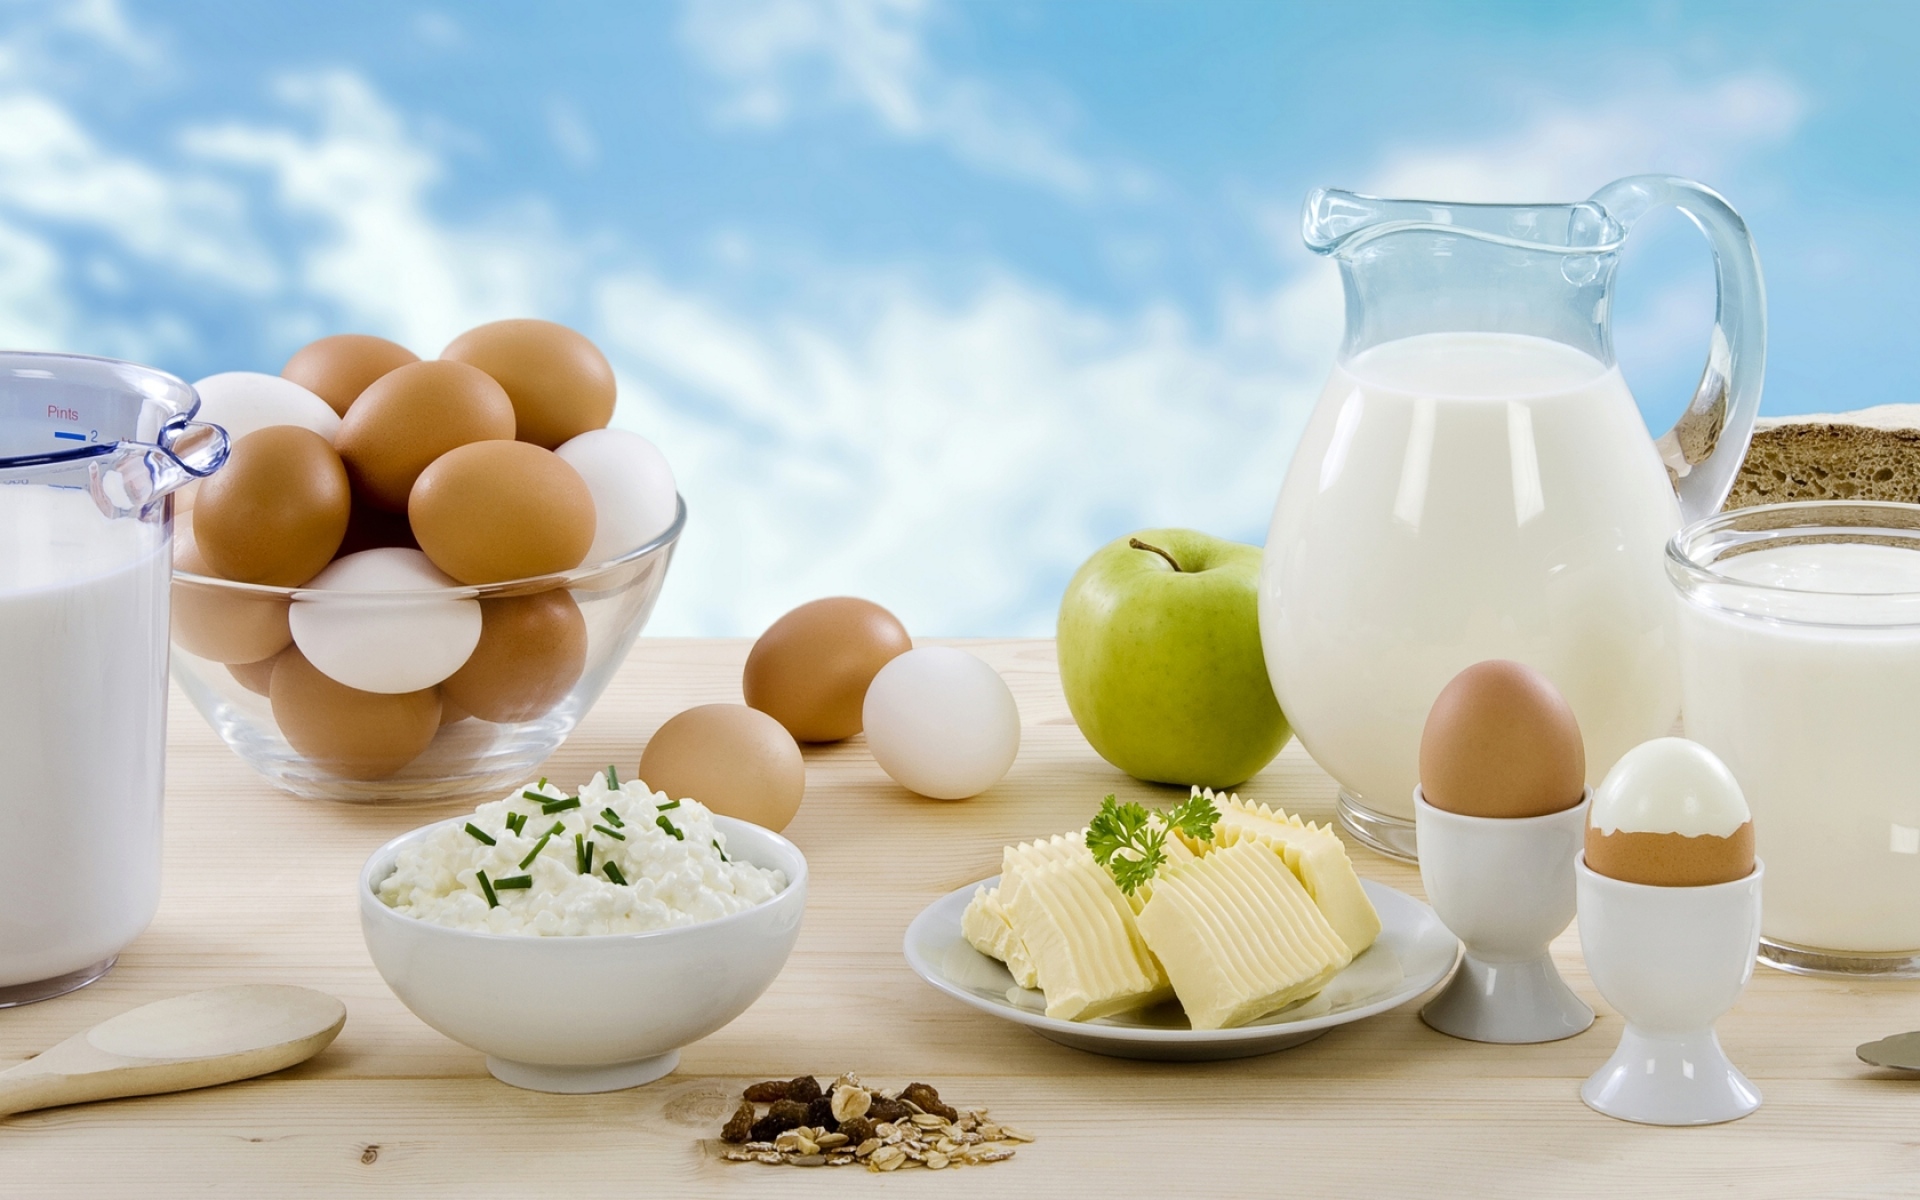 Картинки Молоко, кувшин, сливки, сыр, зелень, орехи, яйца, яблоко, хлеб, нож фото и обои на рабочий стол